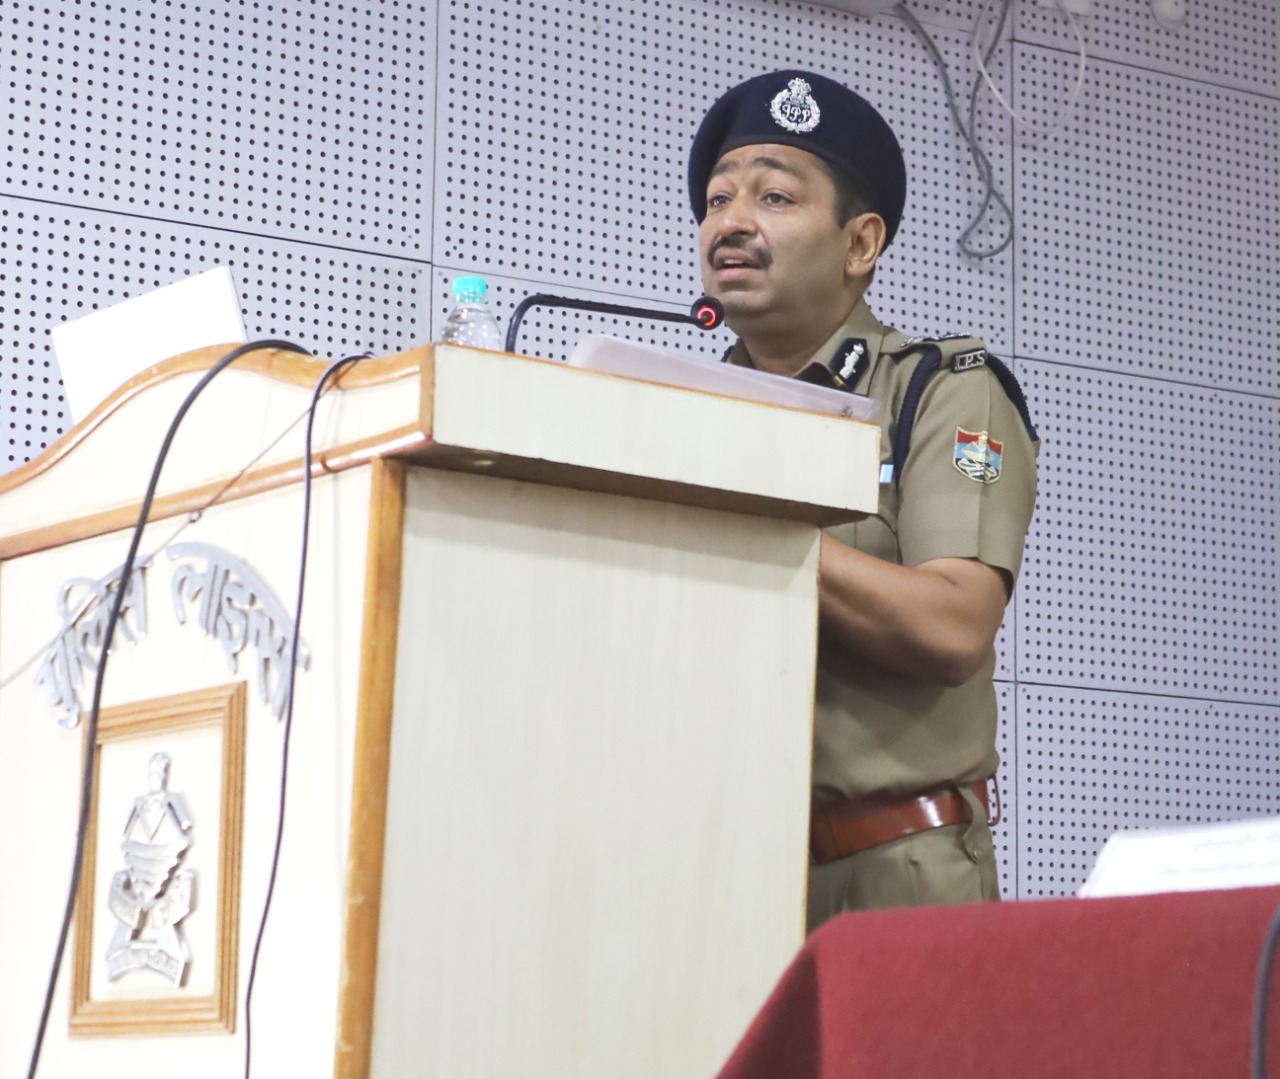  पुलिस महानिदेशक उत्तराखंड अशोक कुमार द्वारा महिलाओं के विरुद्ध होने वालेमामले की जांच करने वाली महिला अधिकारियों हेतु पुलिस लाइन में आयोजित एक दिवसीय कार्यशाला का किया शुभारंभ